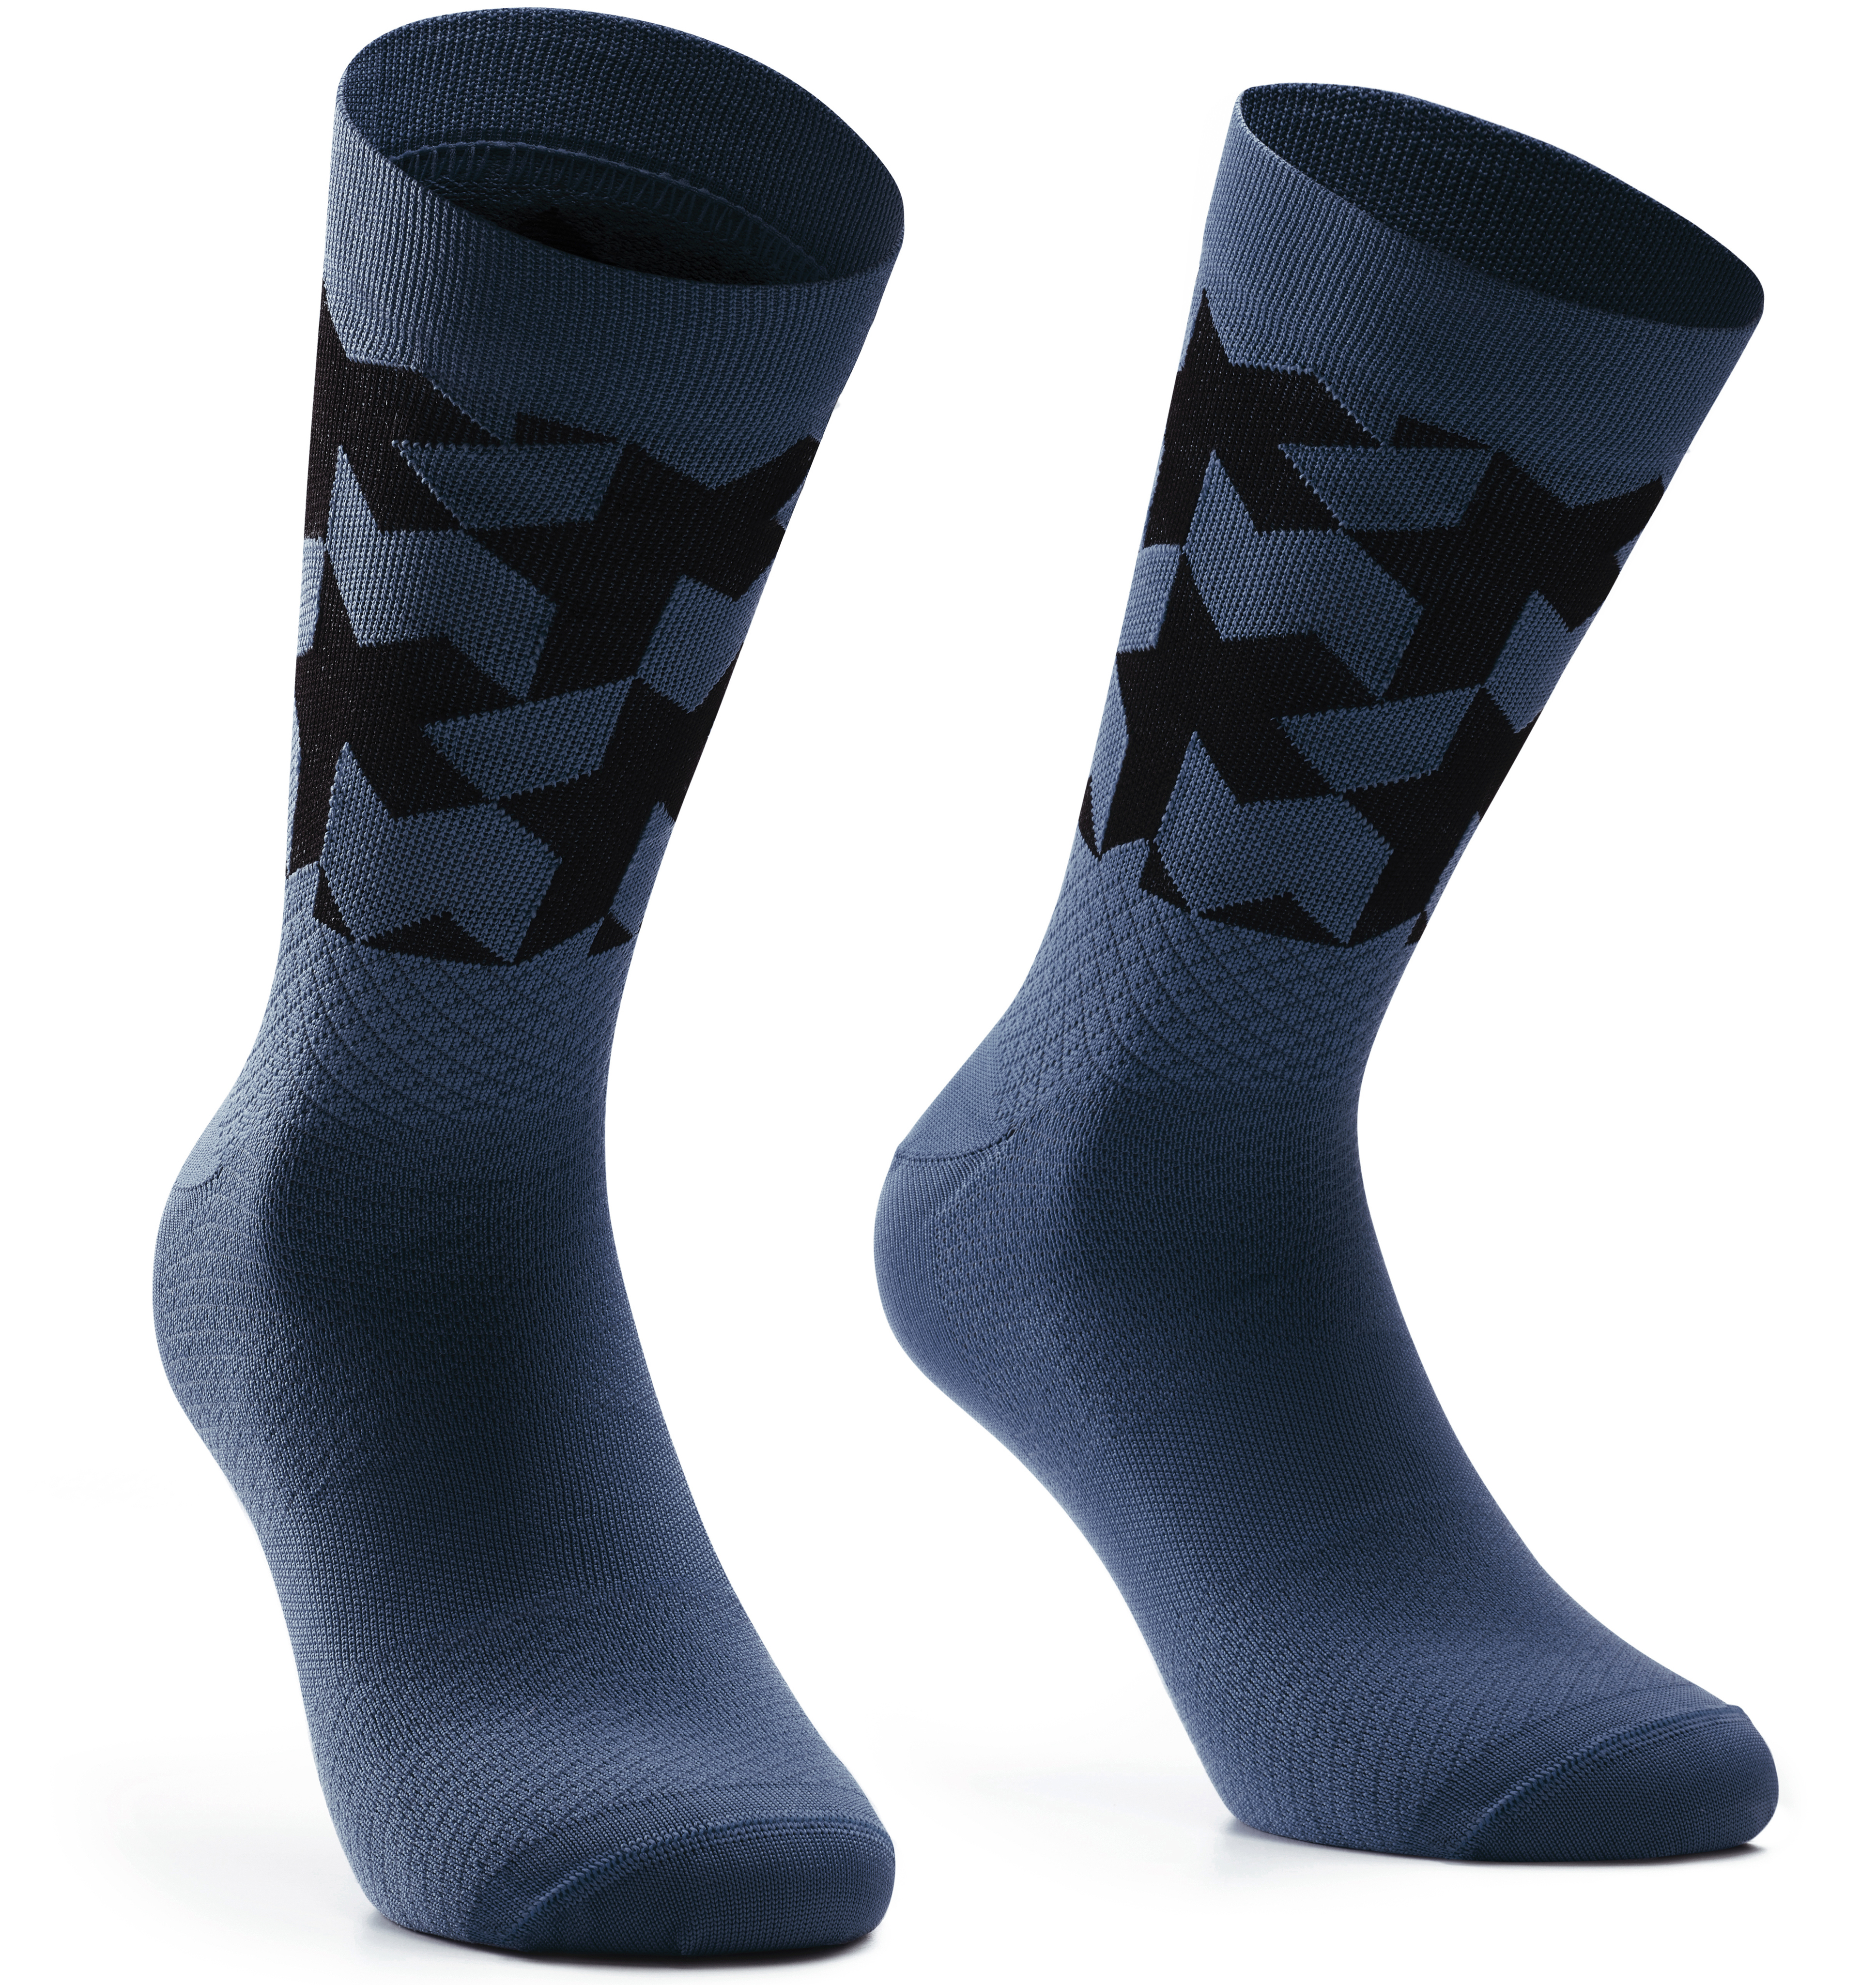 Носки ASSOS Monogram Socks Evo, мужские, сине-черные, II/43-46